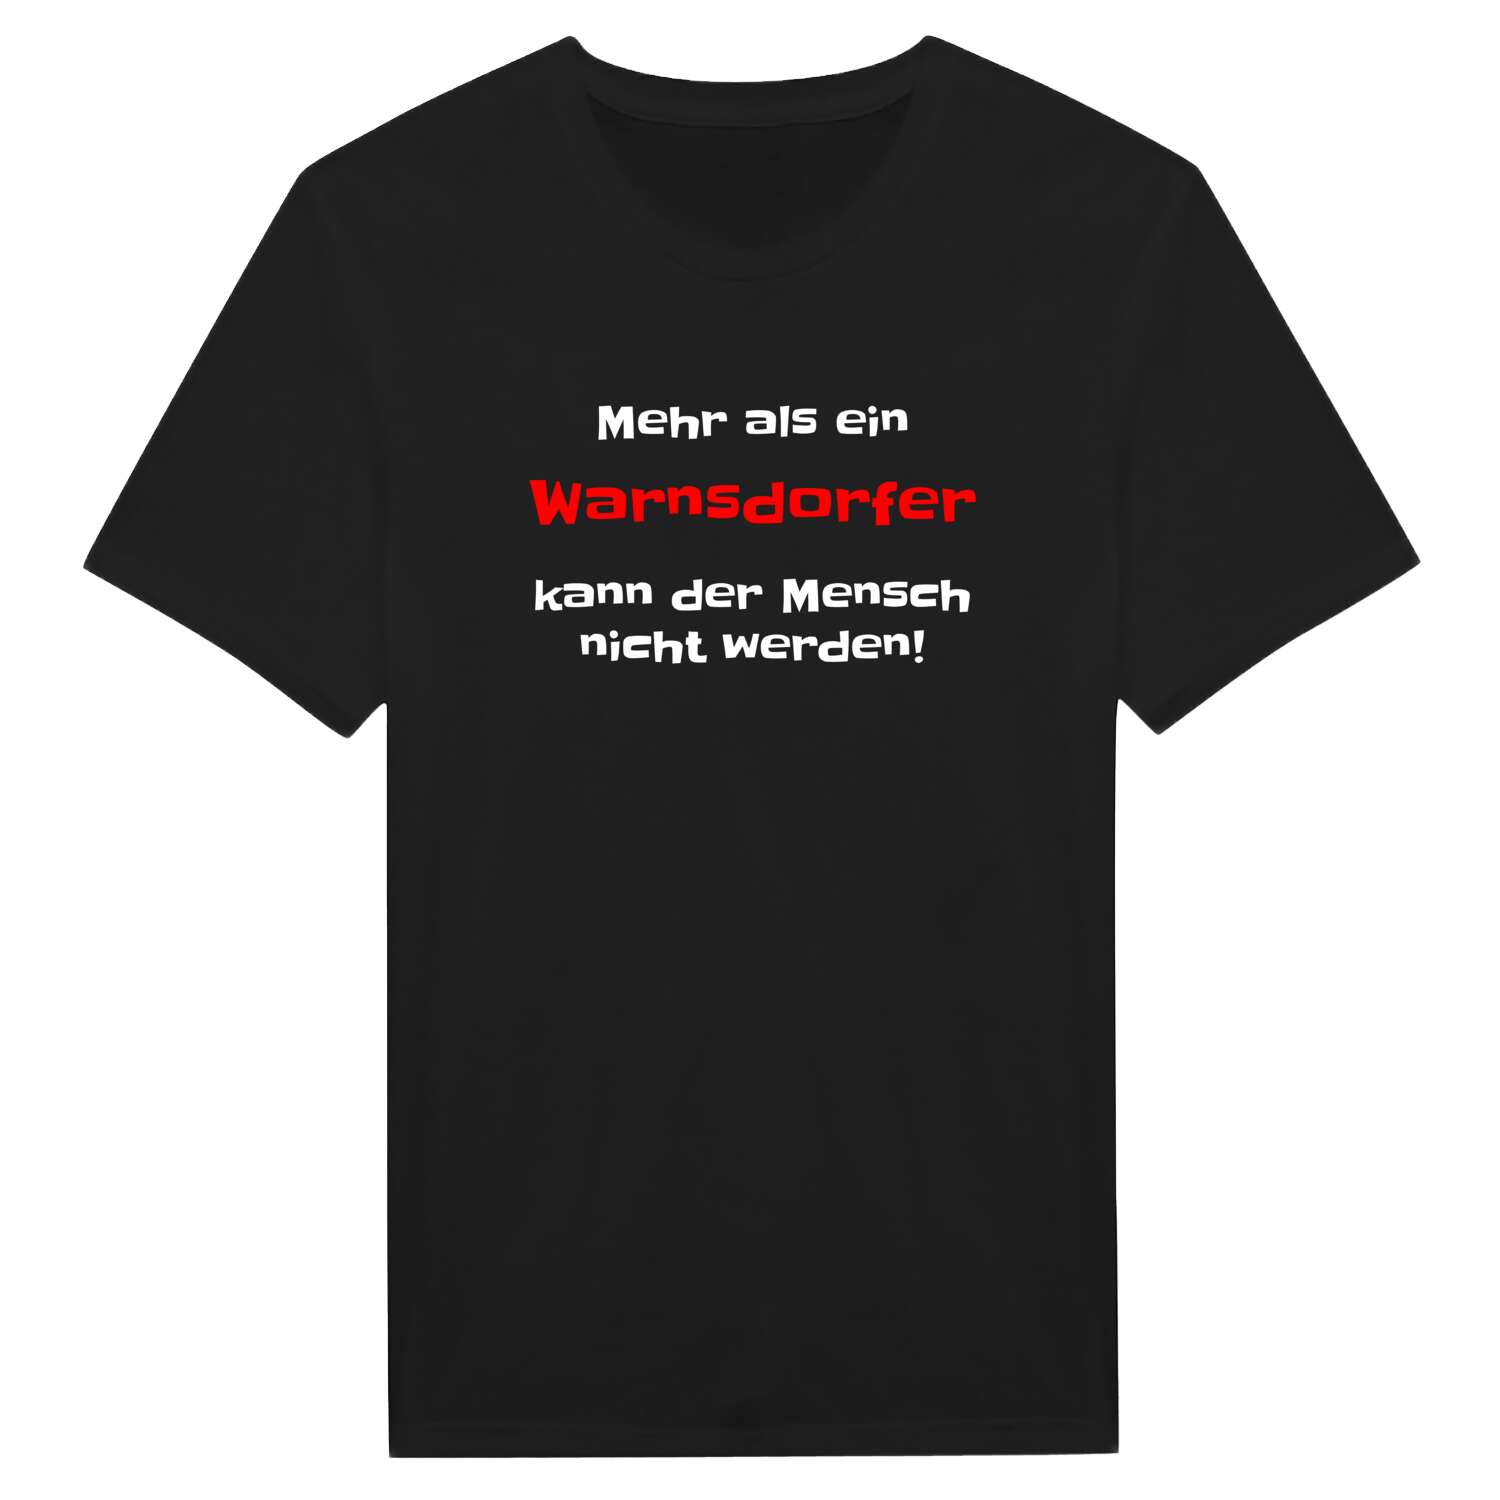 Warnsdorf T-Shirt »Mehr als ein«